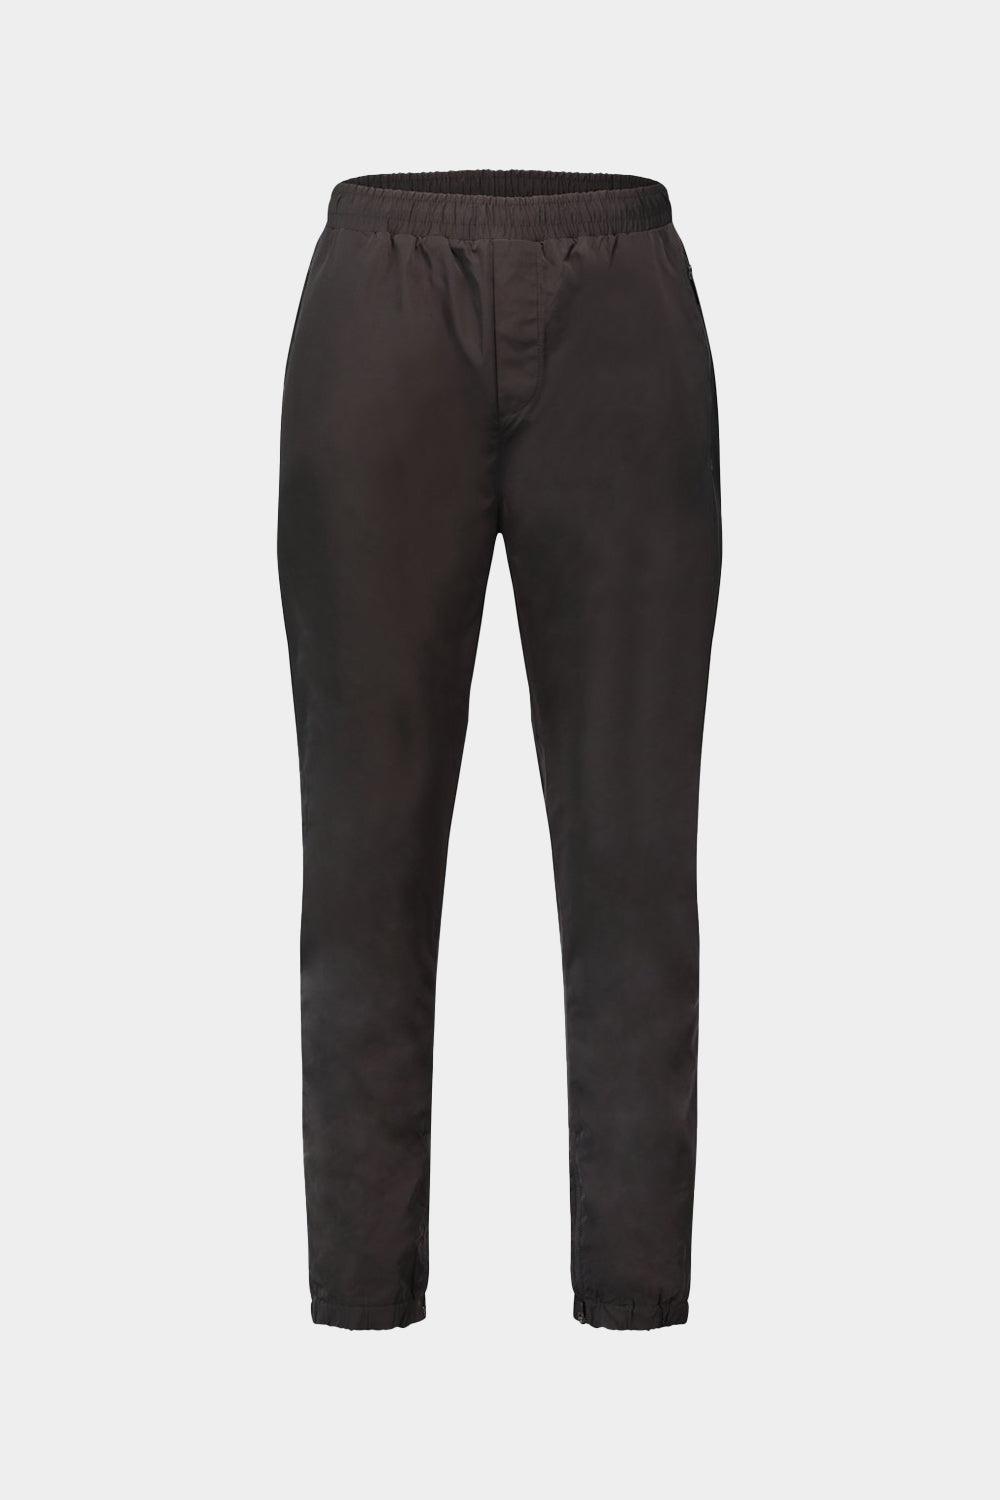 מכנסי טרנינג לגברים בד ניילון KARL LAGERFELD Vendome online | ונדום .